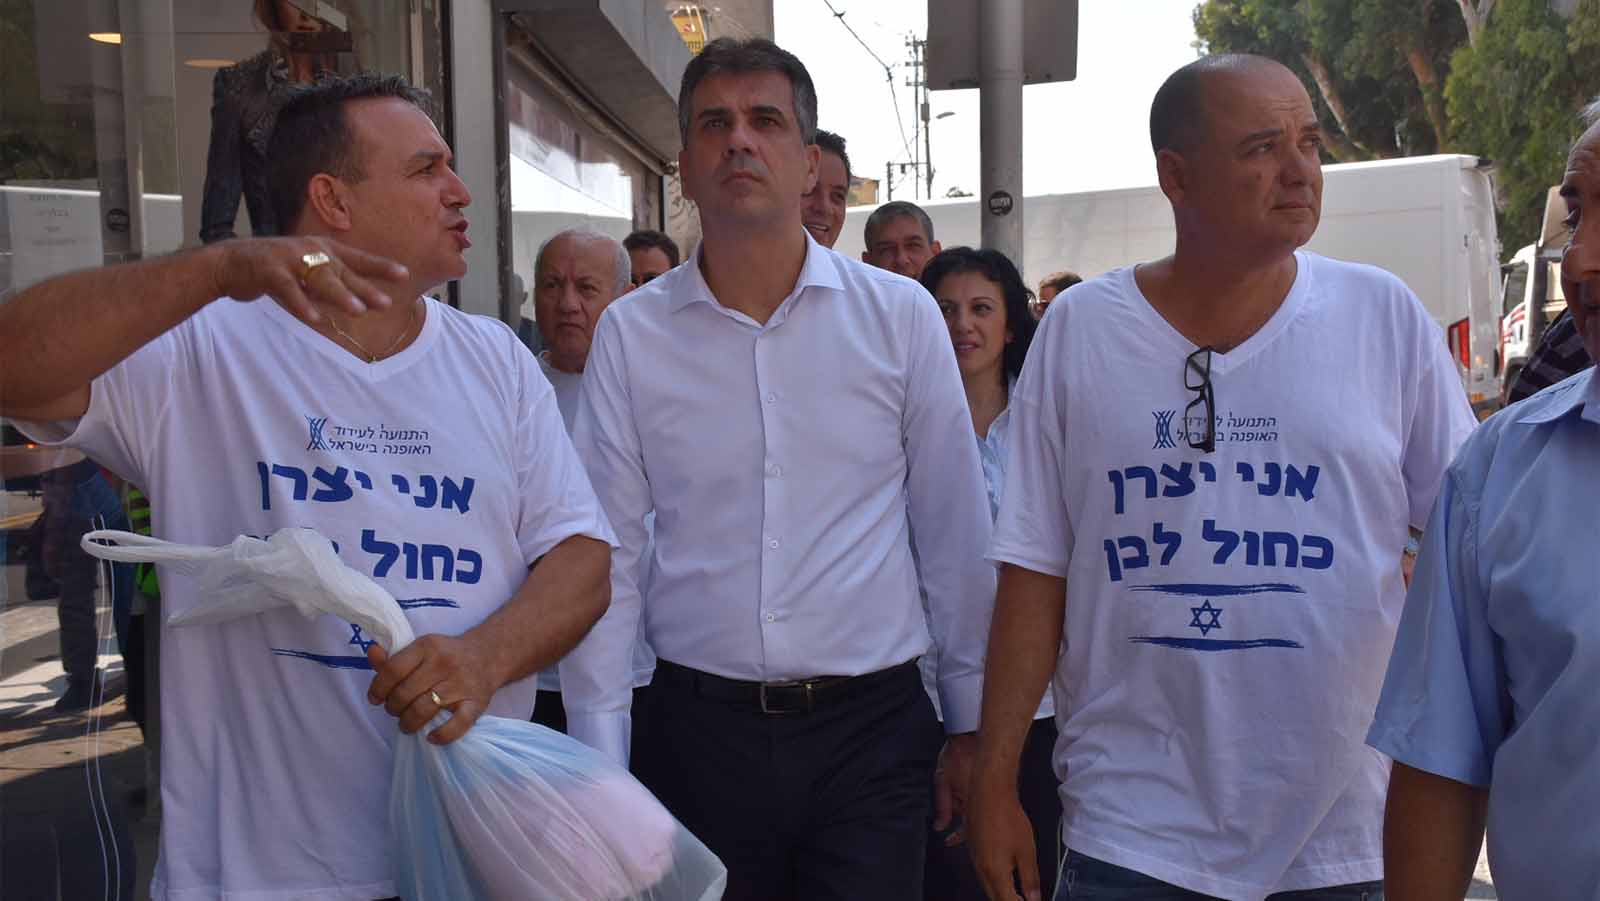 שר הכלכלה אלי כהן בסיור עם חברי התנועה לעידוד האופנה בישראל (צילום: דוברות משרד הכלכלה והתעשייה)